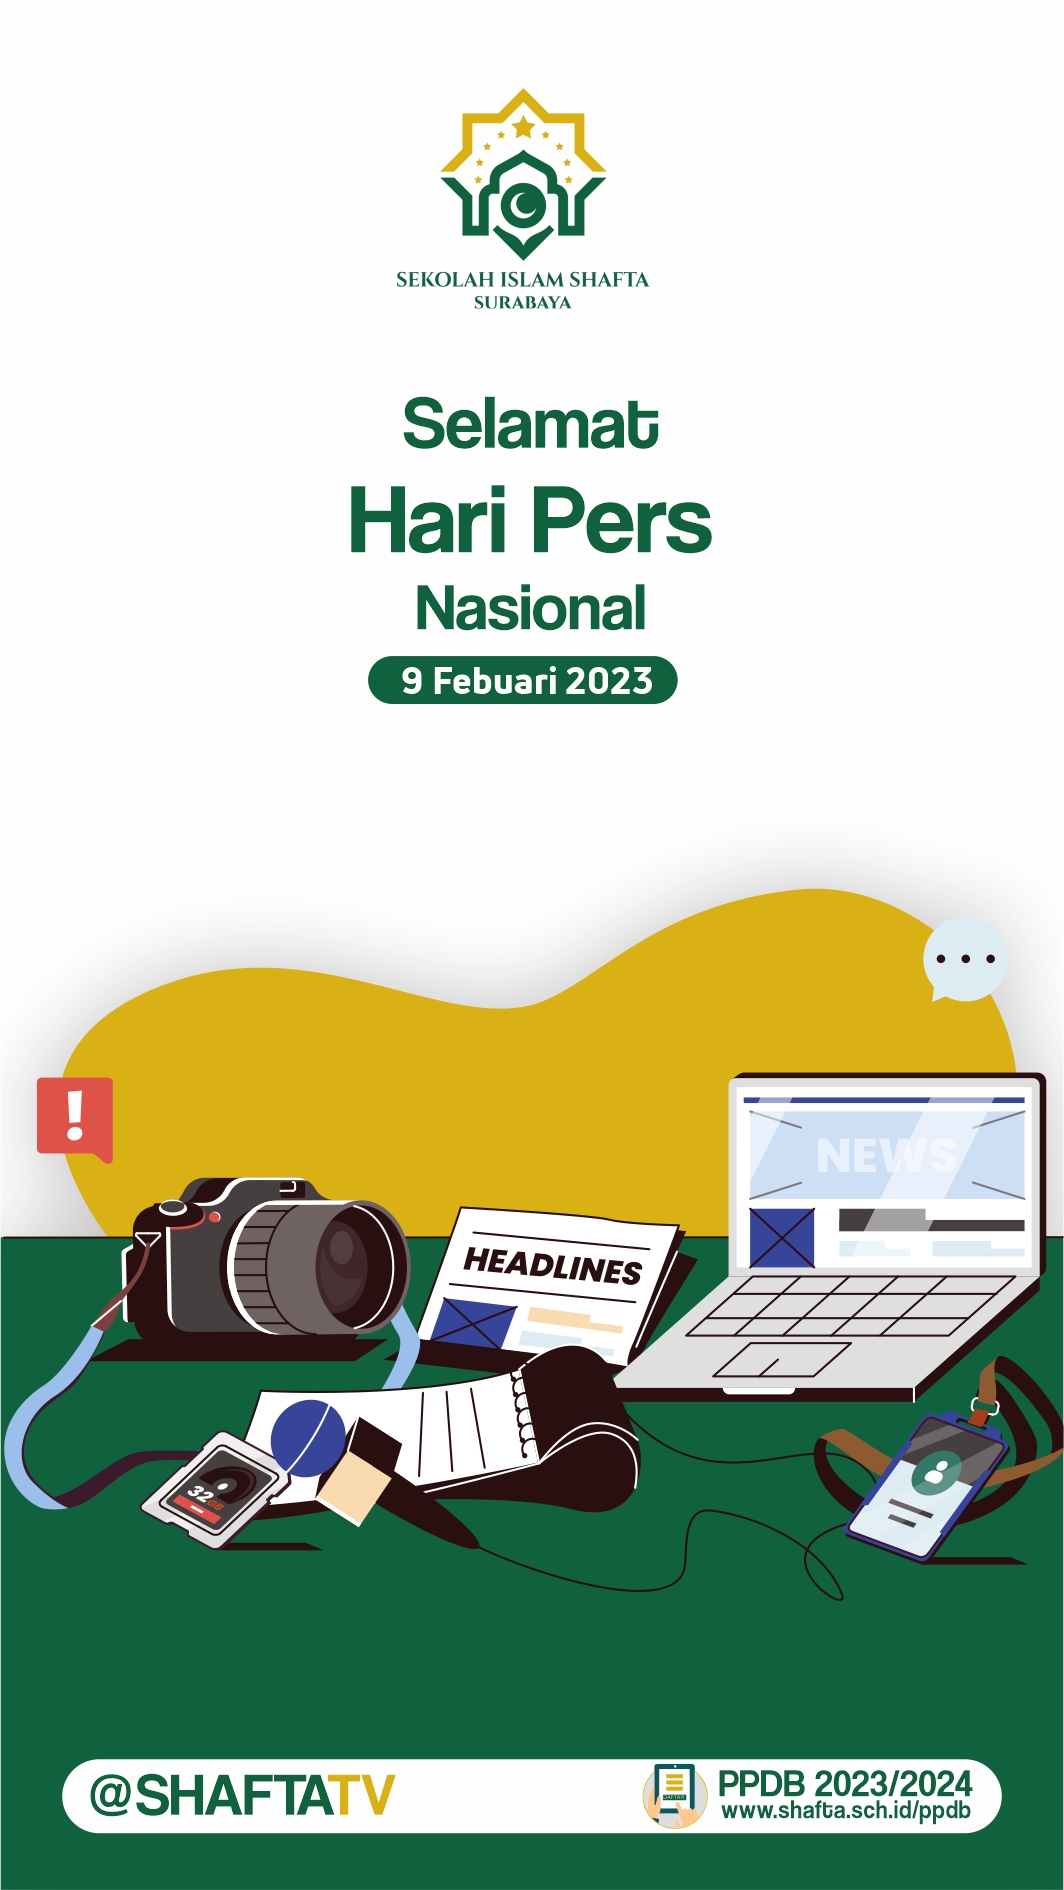 HARI PERS NASIONAL Sekolah Islam Shafta Surabaya